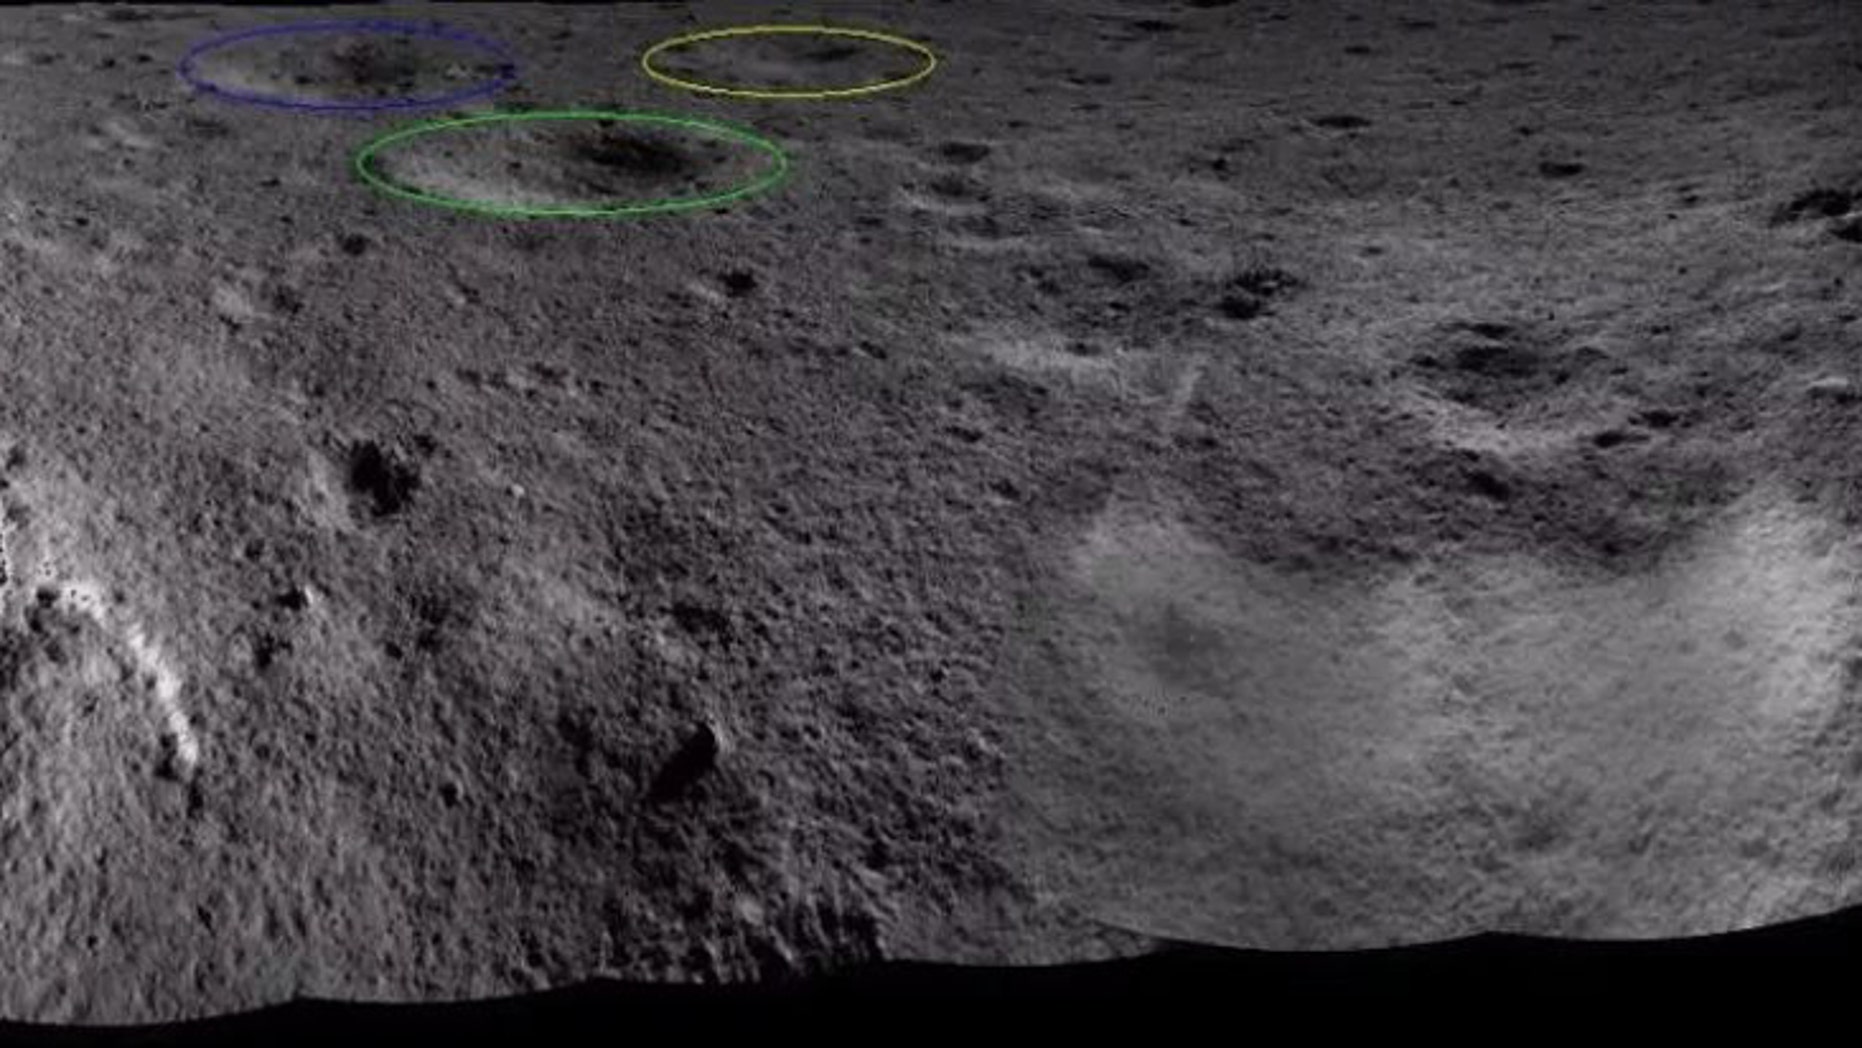 Видео обратной стороны луны. Обратная сторона Луны спутника земли. Снимки обратной стороны Луны высокого разрешения 2019. Снимки обратной стороны Луны с китайского спутника. Тайна темной стороны Луны.